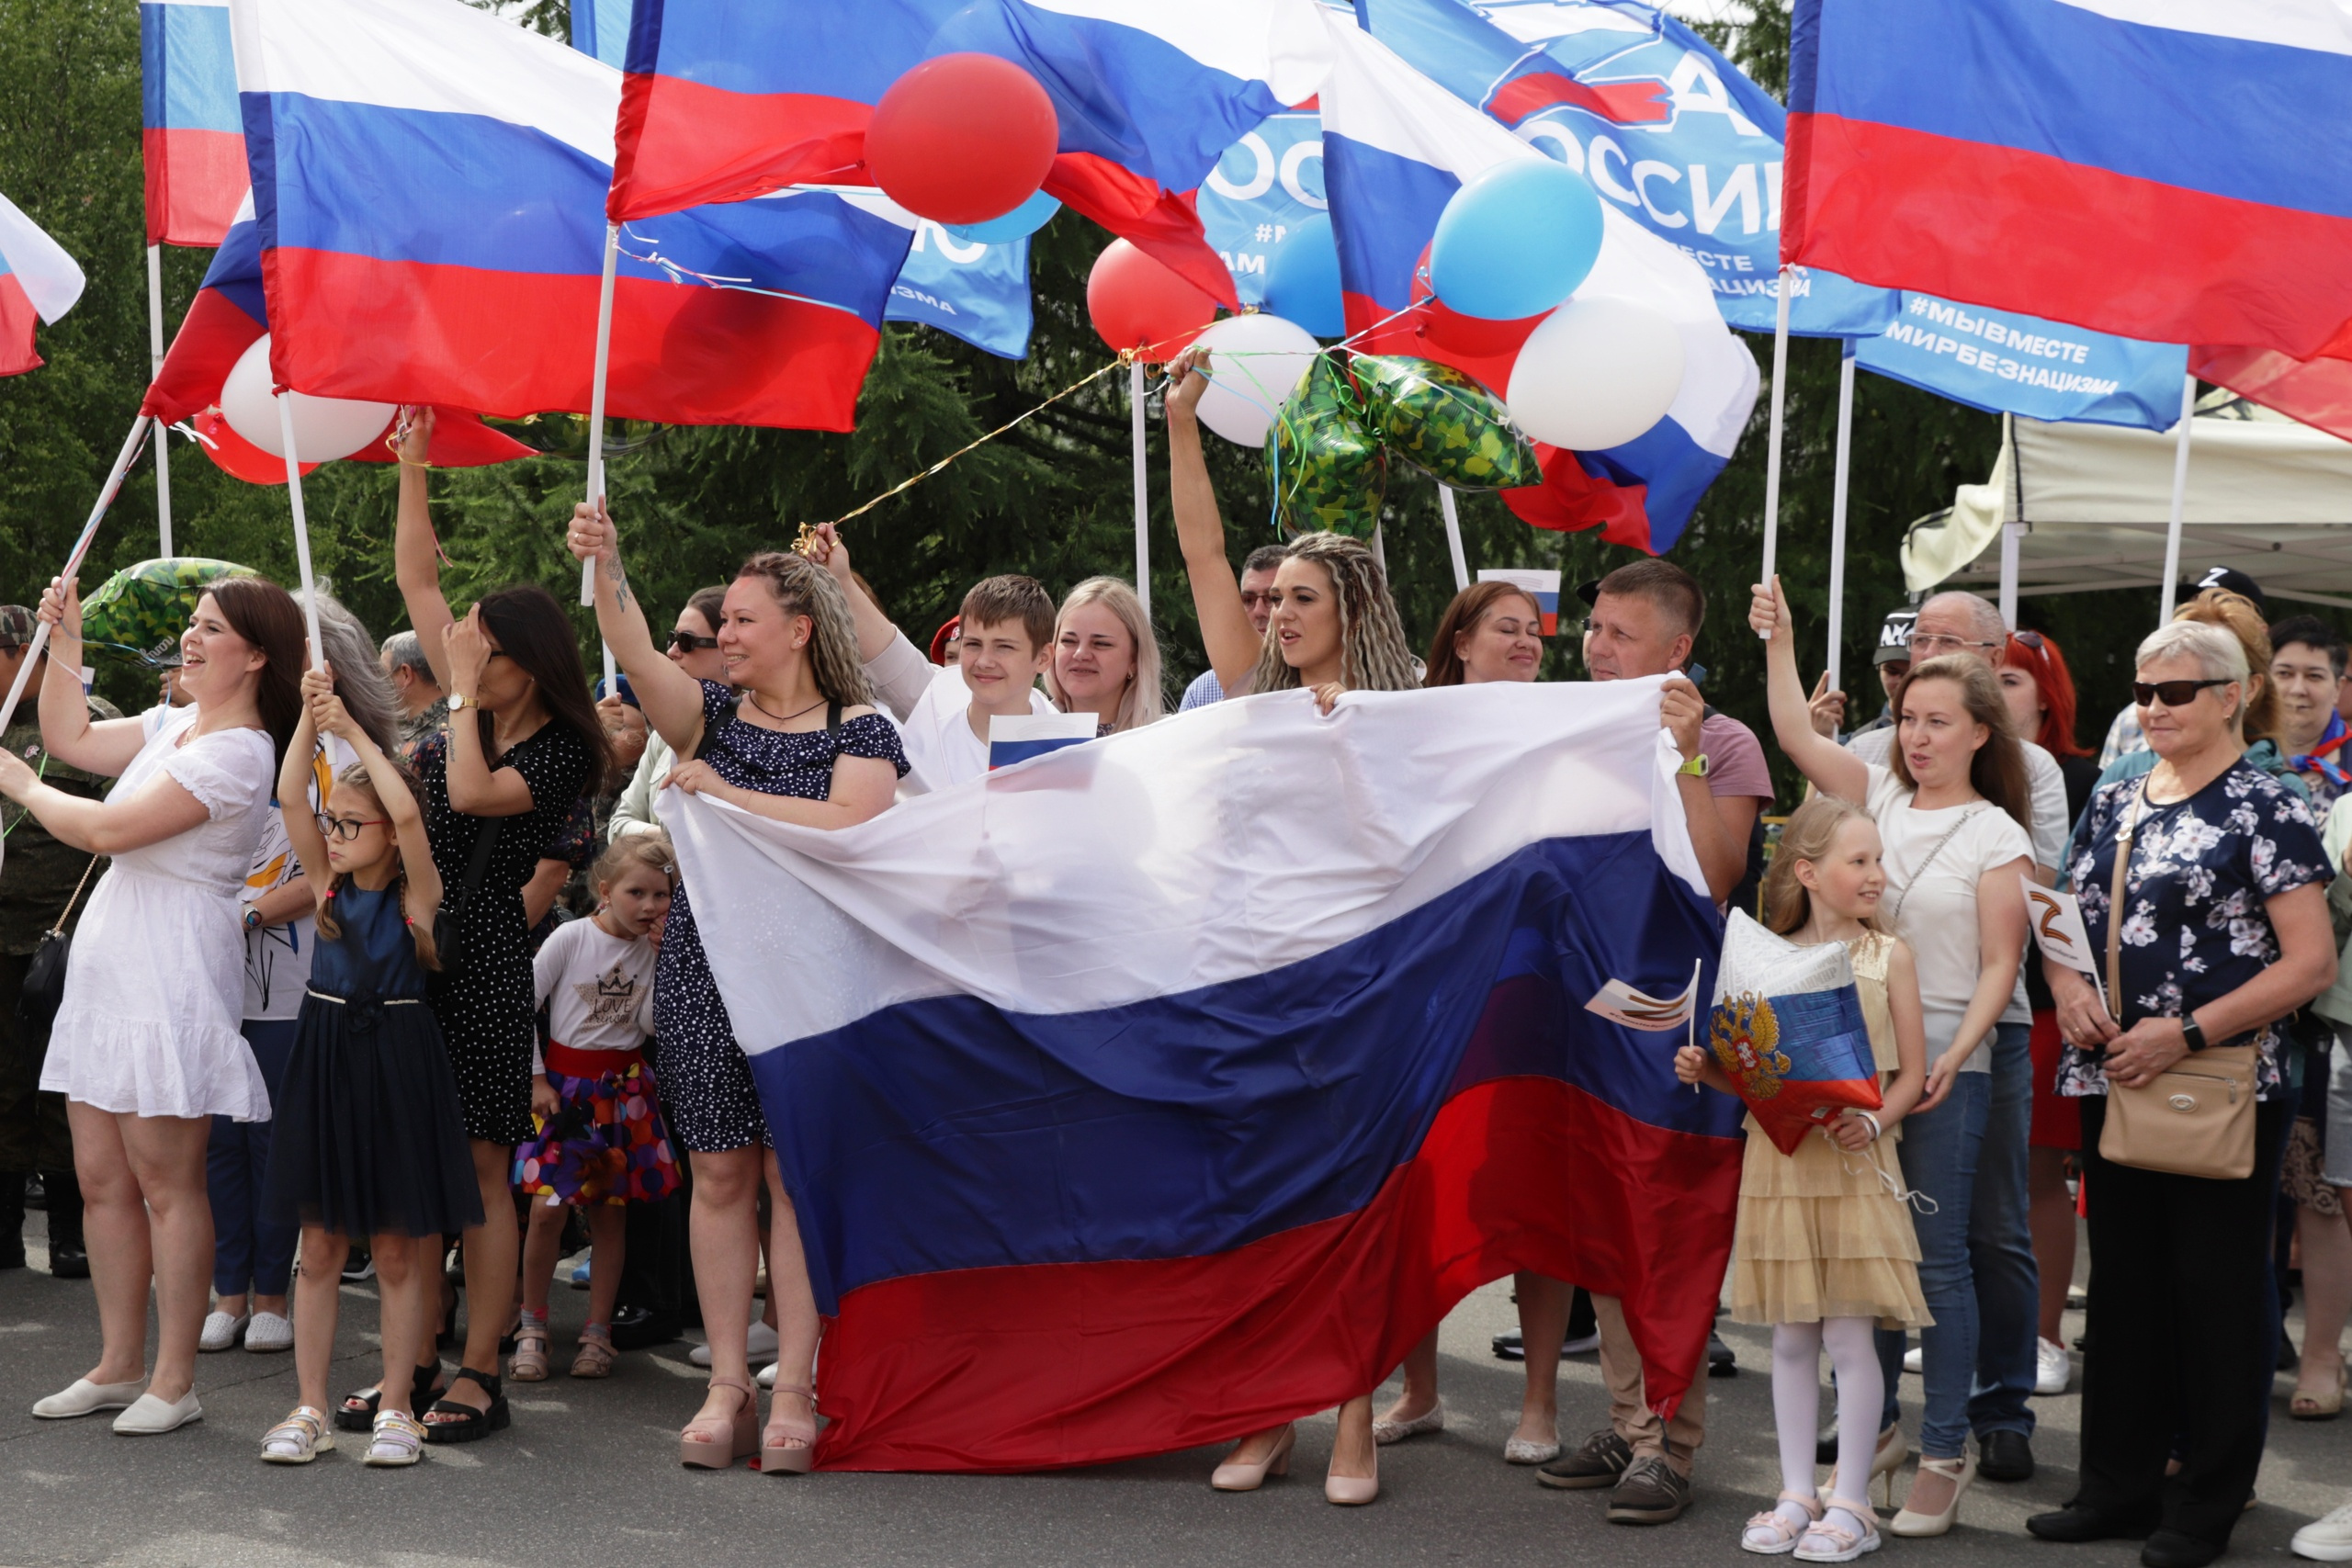 Бойцов встретили громко: с триколорами, шарами и символикой в поддержку российской армии